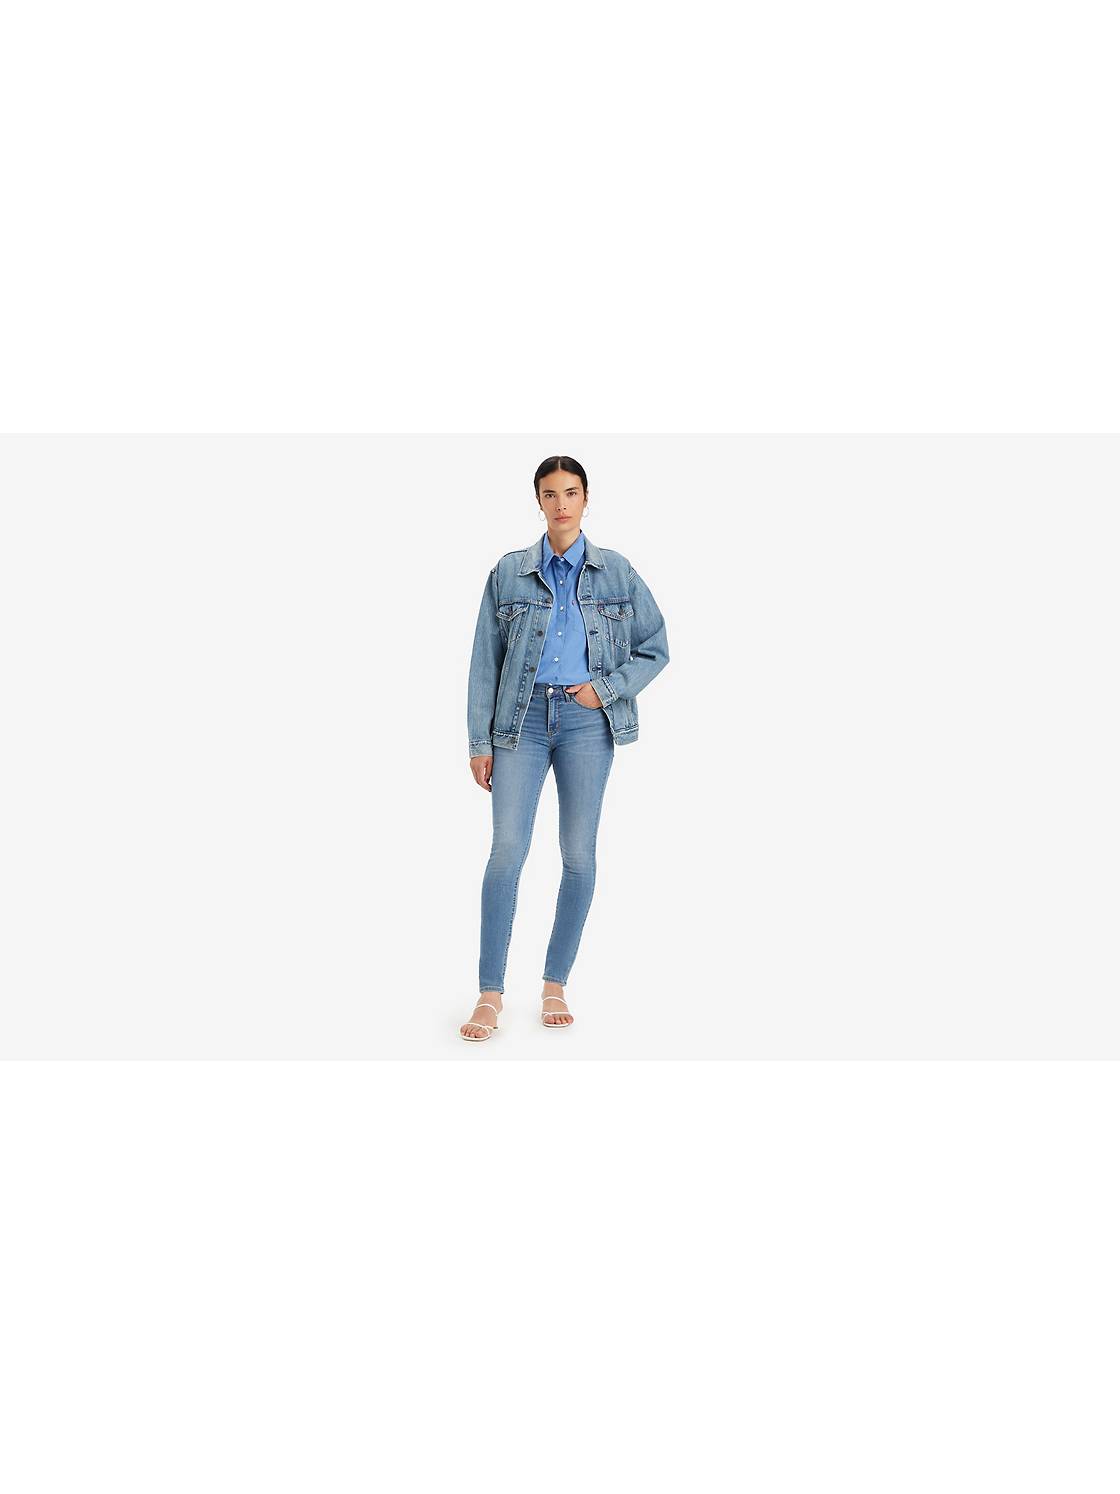 Pantalon Jean para mujer,Size 8Mis M, Marca LEVIS, Color Celeste.